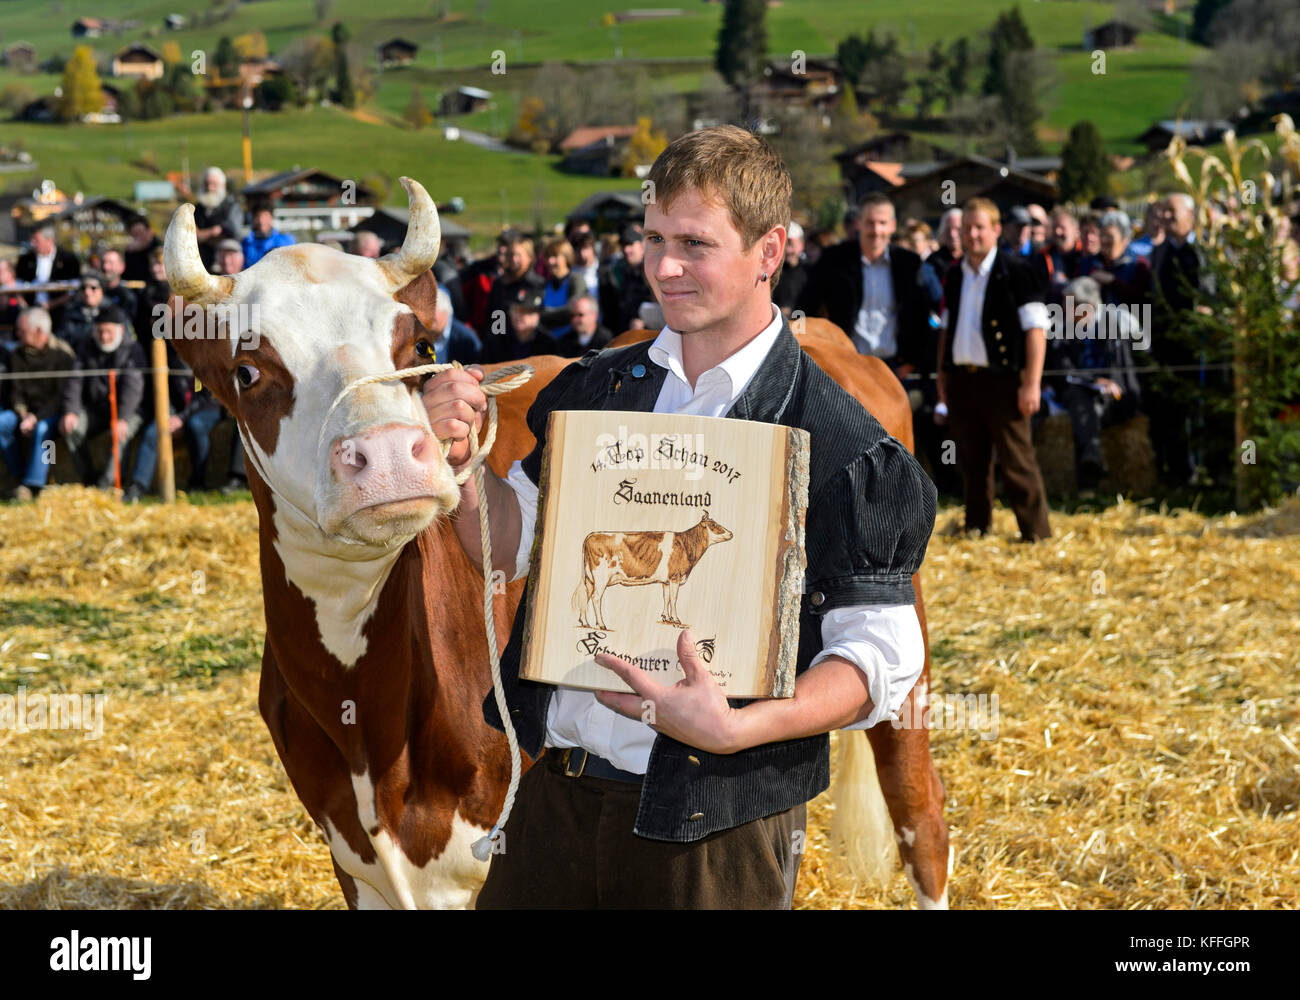 Gstaad, Suisse. 28 octobre 2017. Le propriétaire de la vache Fleckvieh Suisse Falk montre fièrement un prix reçu le SWISSCOW Topschau Saanenland, Gstaad, Suisse crédit: GFC Collection/Alay Live News Banque D'Images